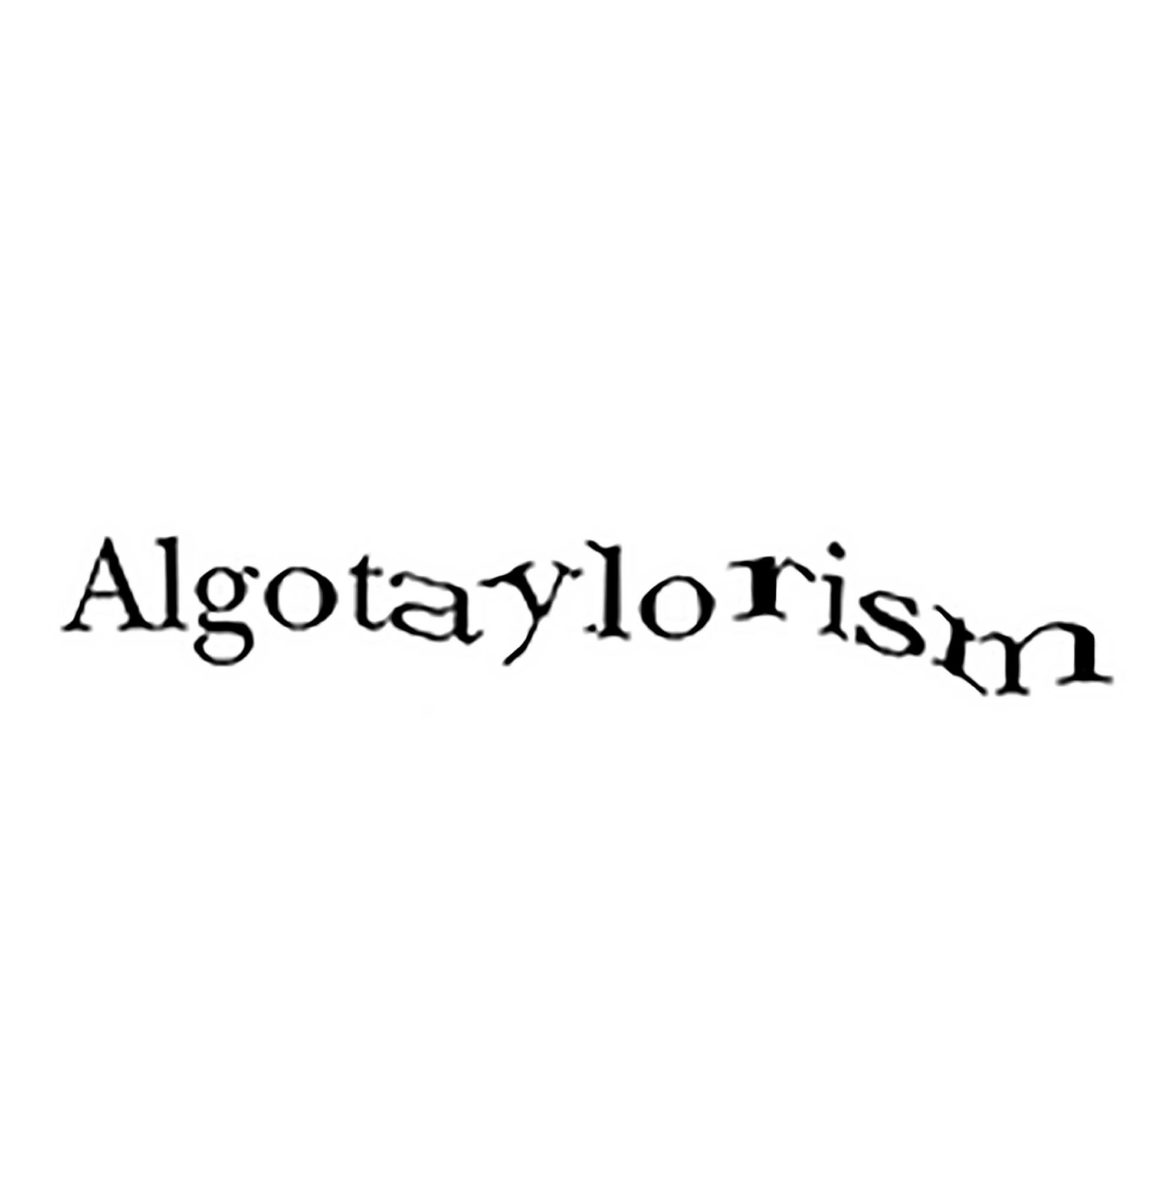 [ANNULATION] Visite commentée de l'exposition Algotaylorism